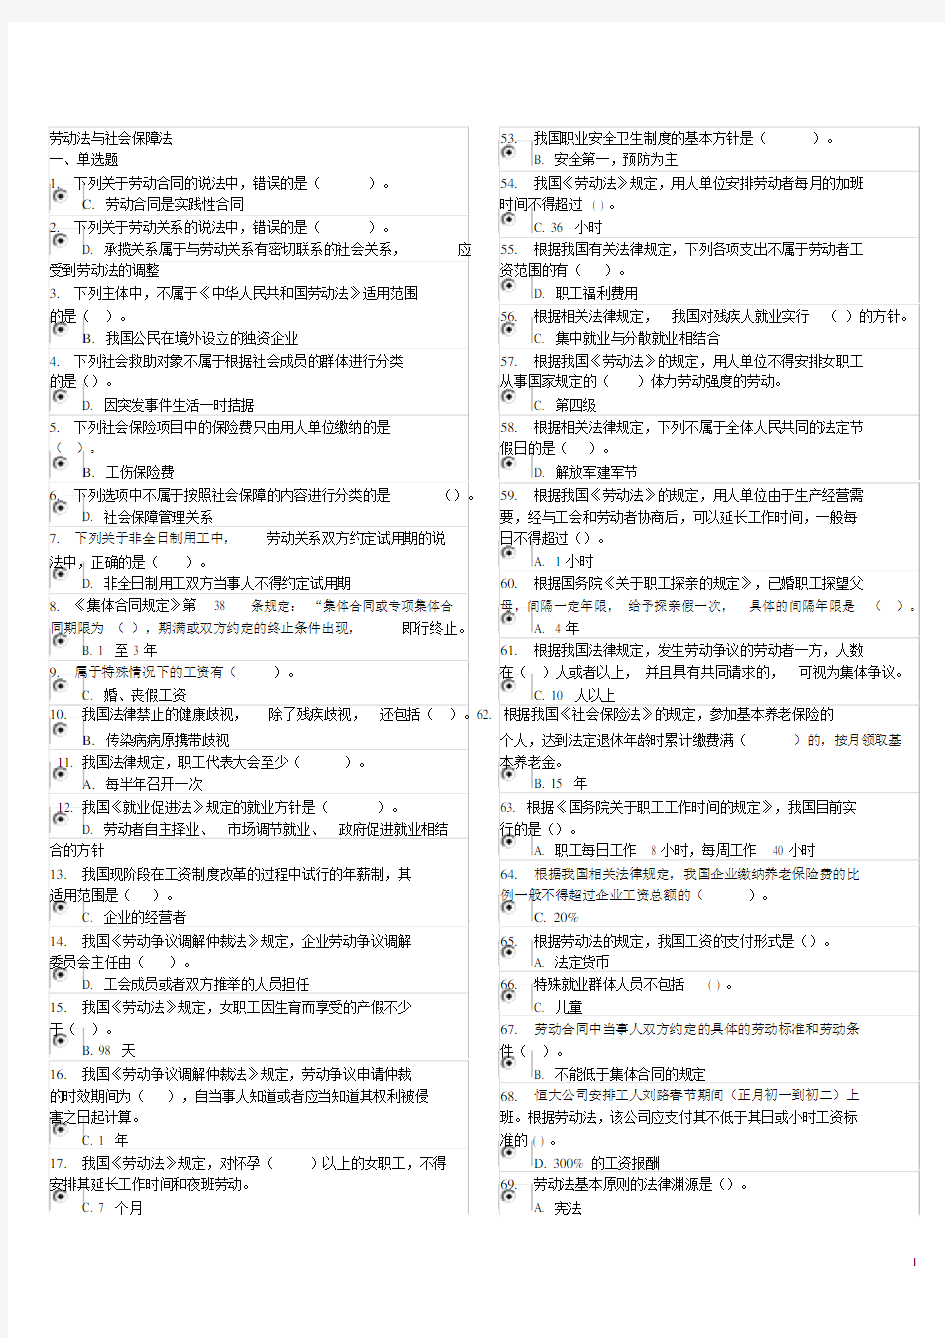 (完整word版)劳动法与社会保障法电大机考资料(完整版).docx